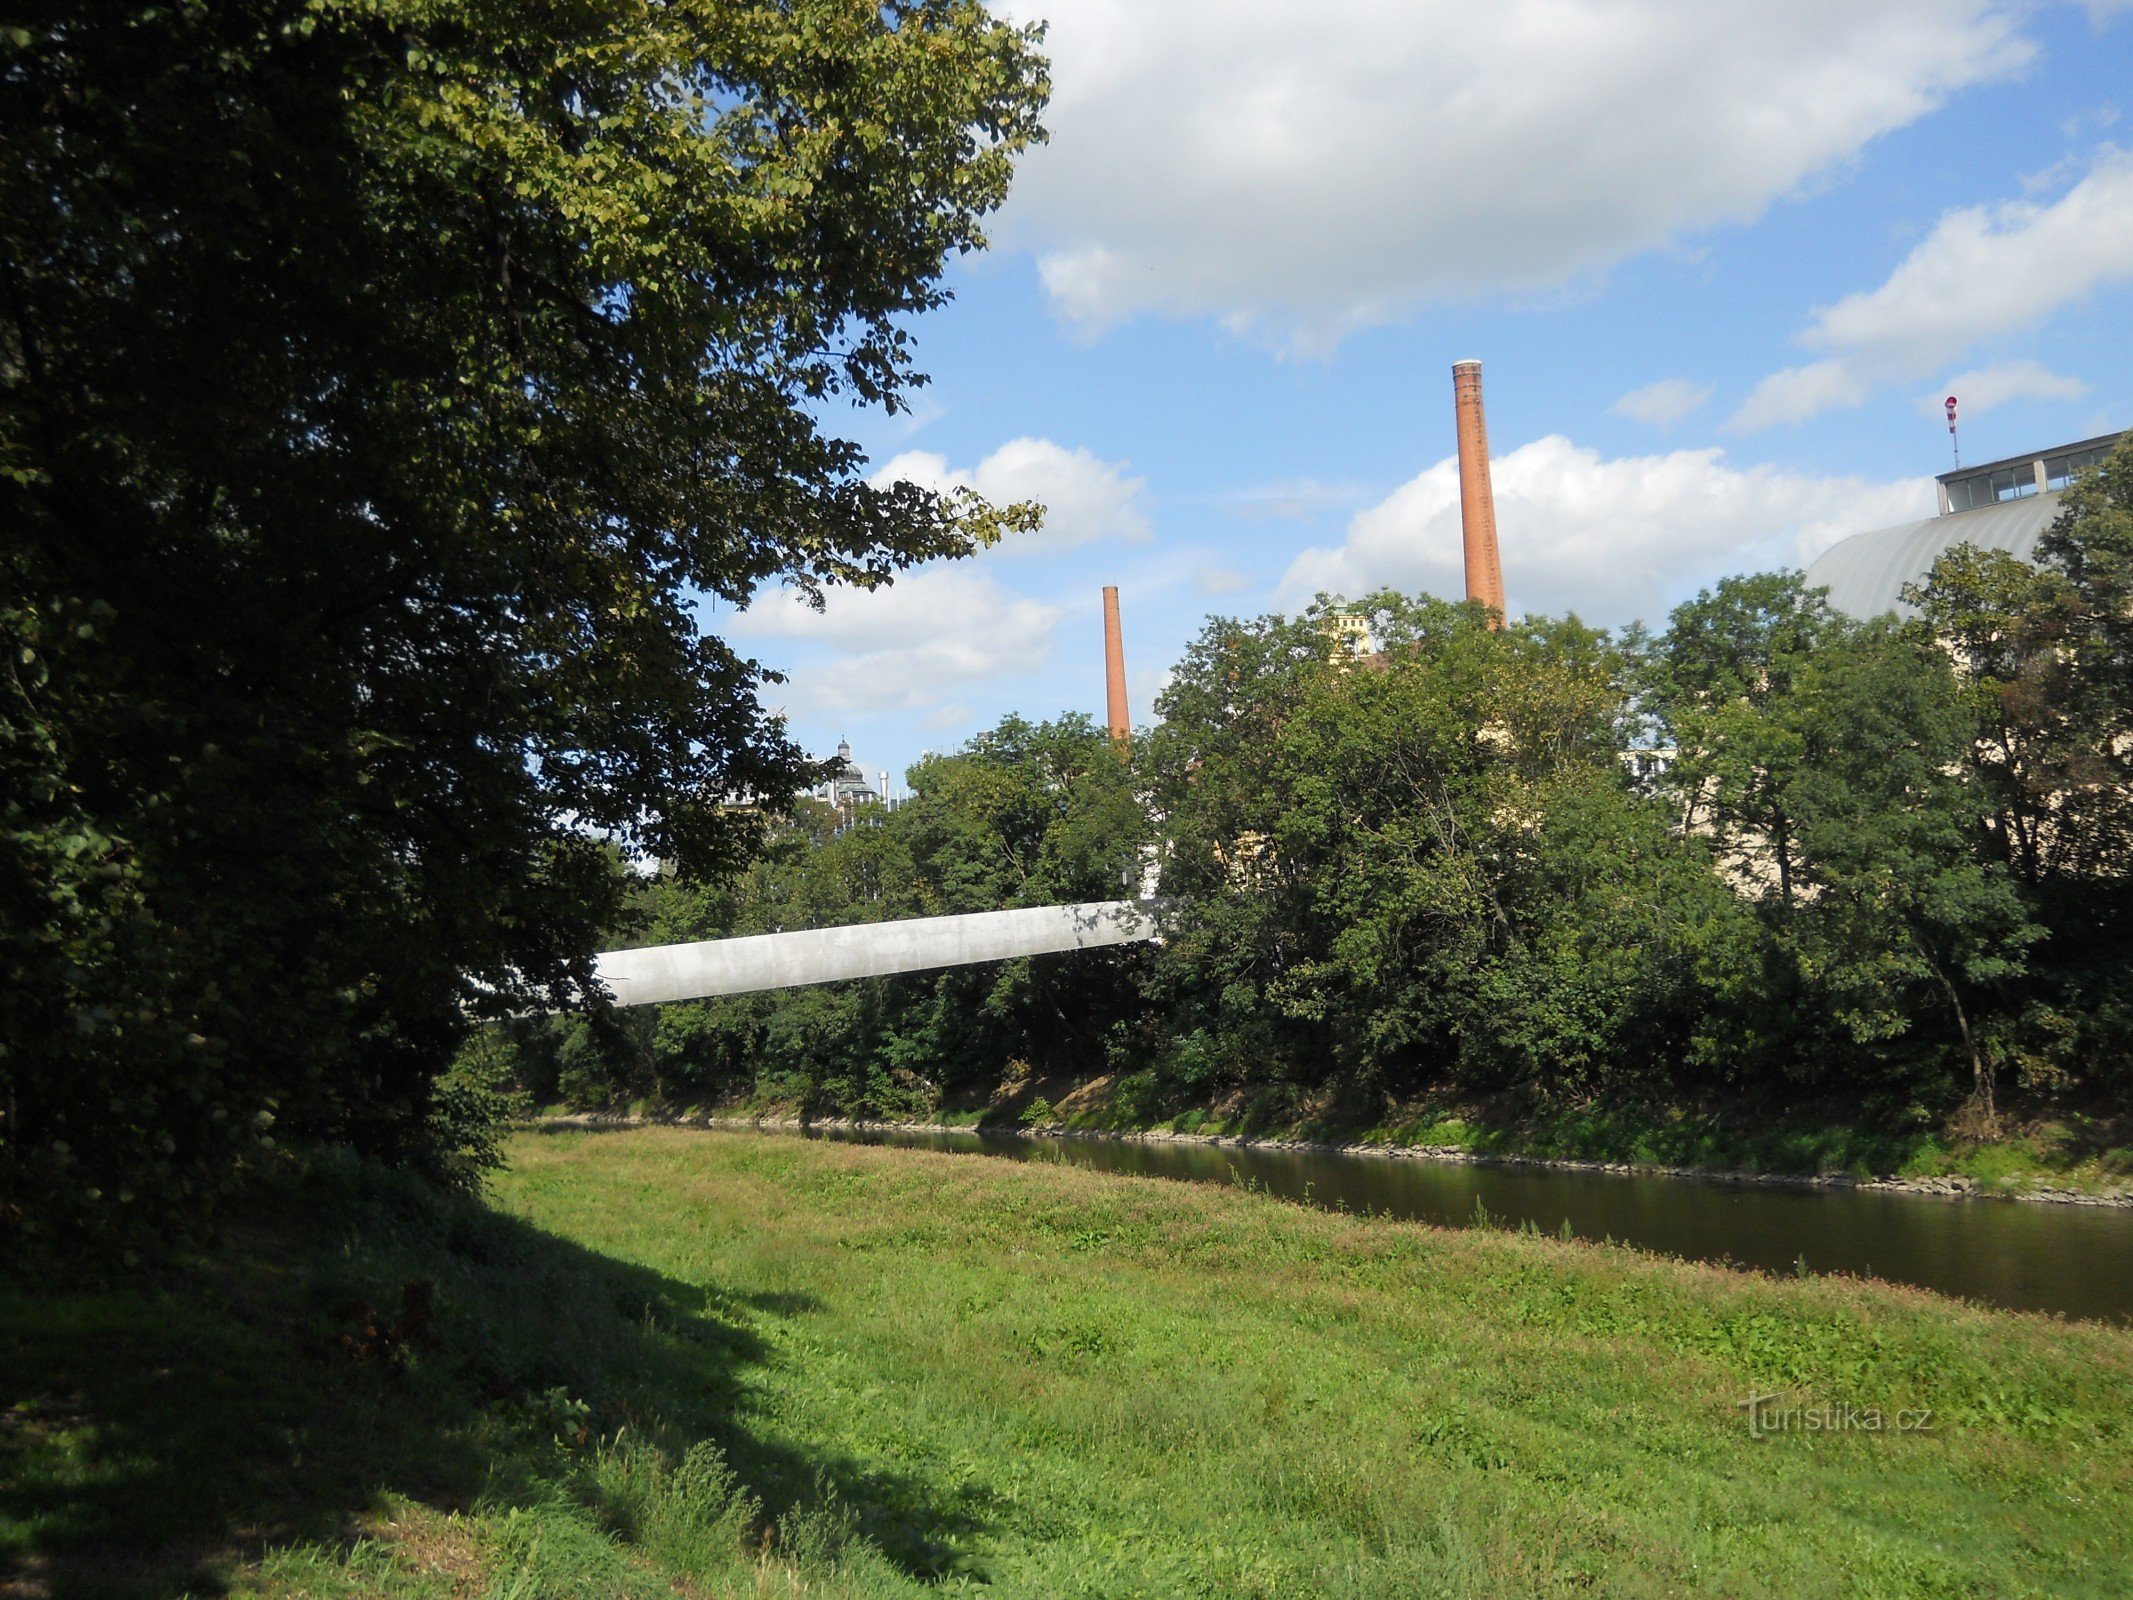 Một cây cầu đi bộ từ công viên ở ngã ba đến khu đất của nhà máy bia Pilsen